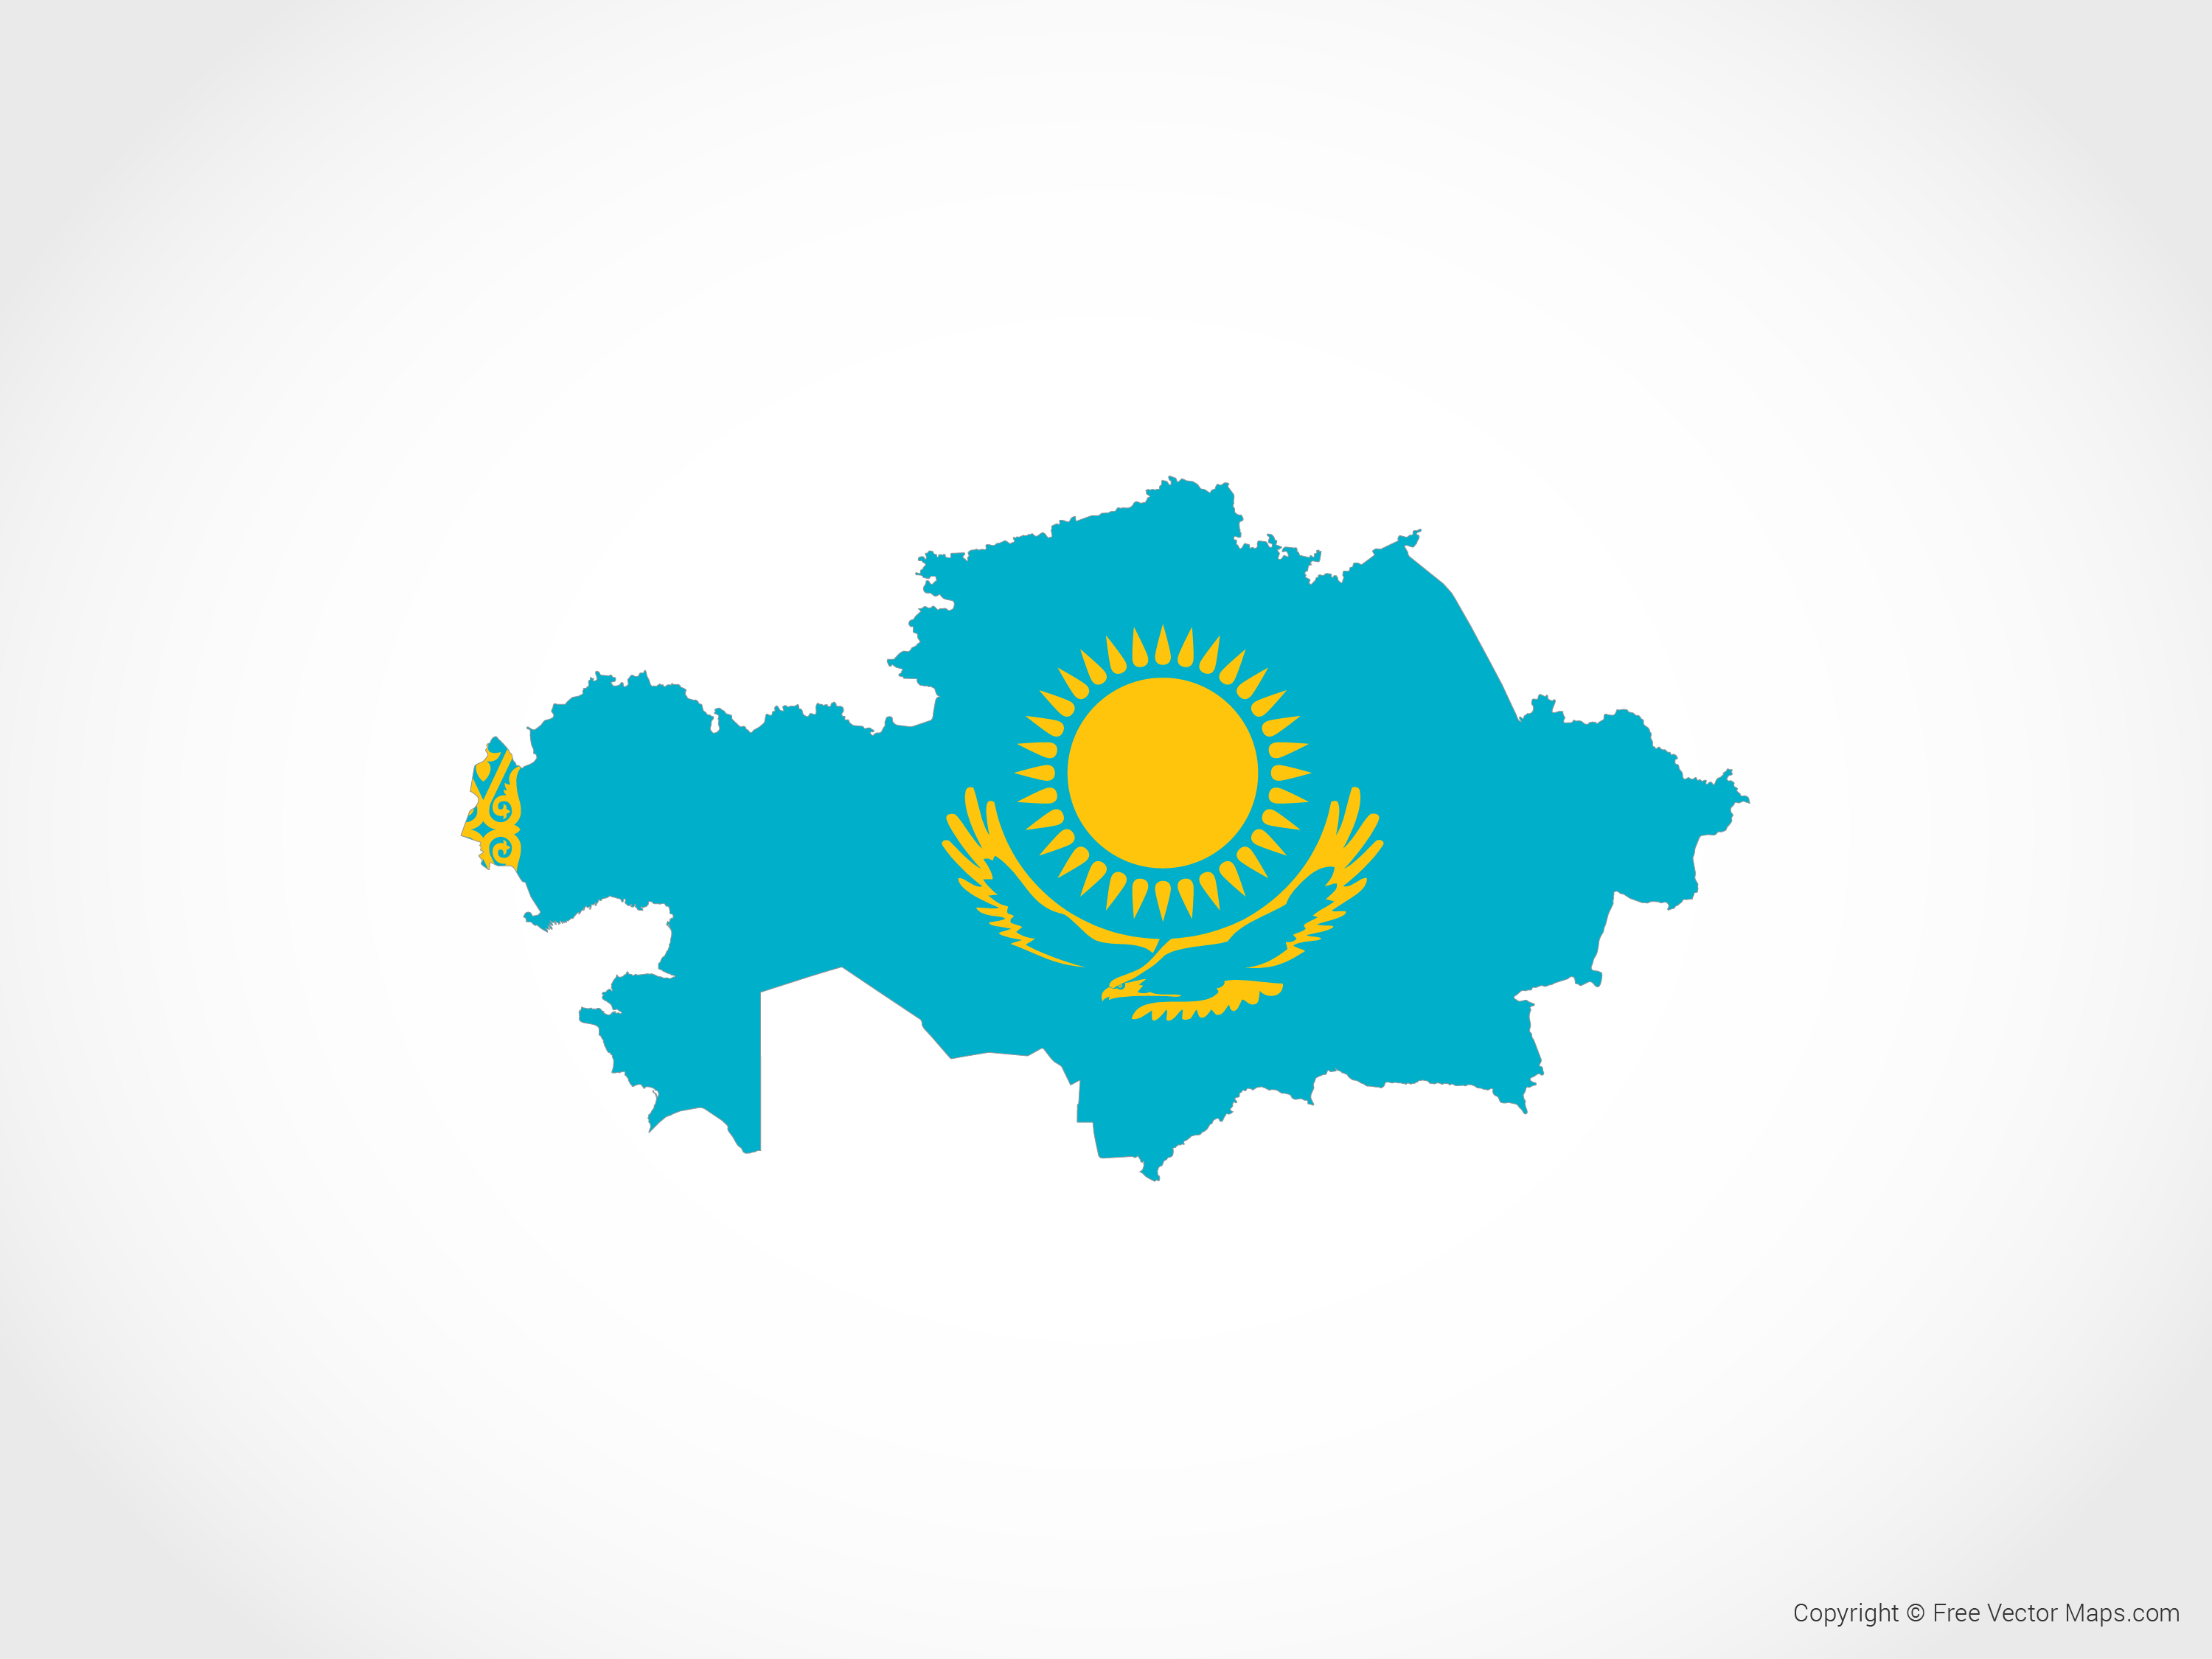 Казахстане и т д. Карта 3д Казахстан Казахстана. Казахстан на карте с флагом. Территория Казахстана с флагом. Карта Казахстана вектор.